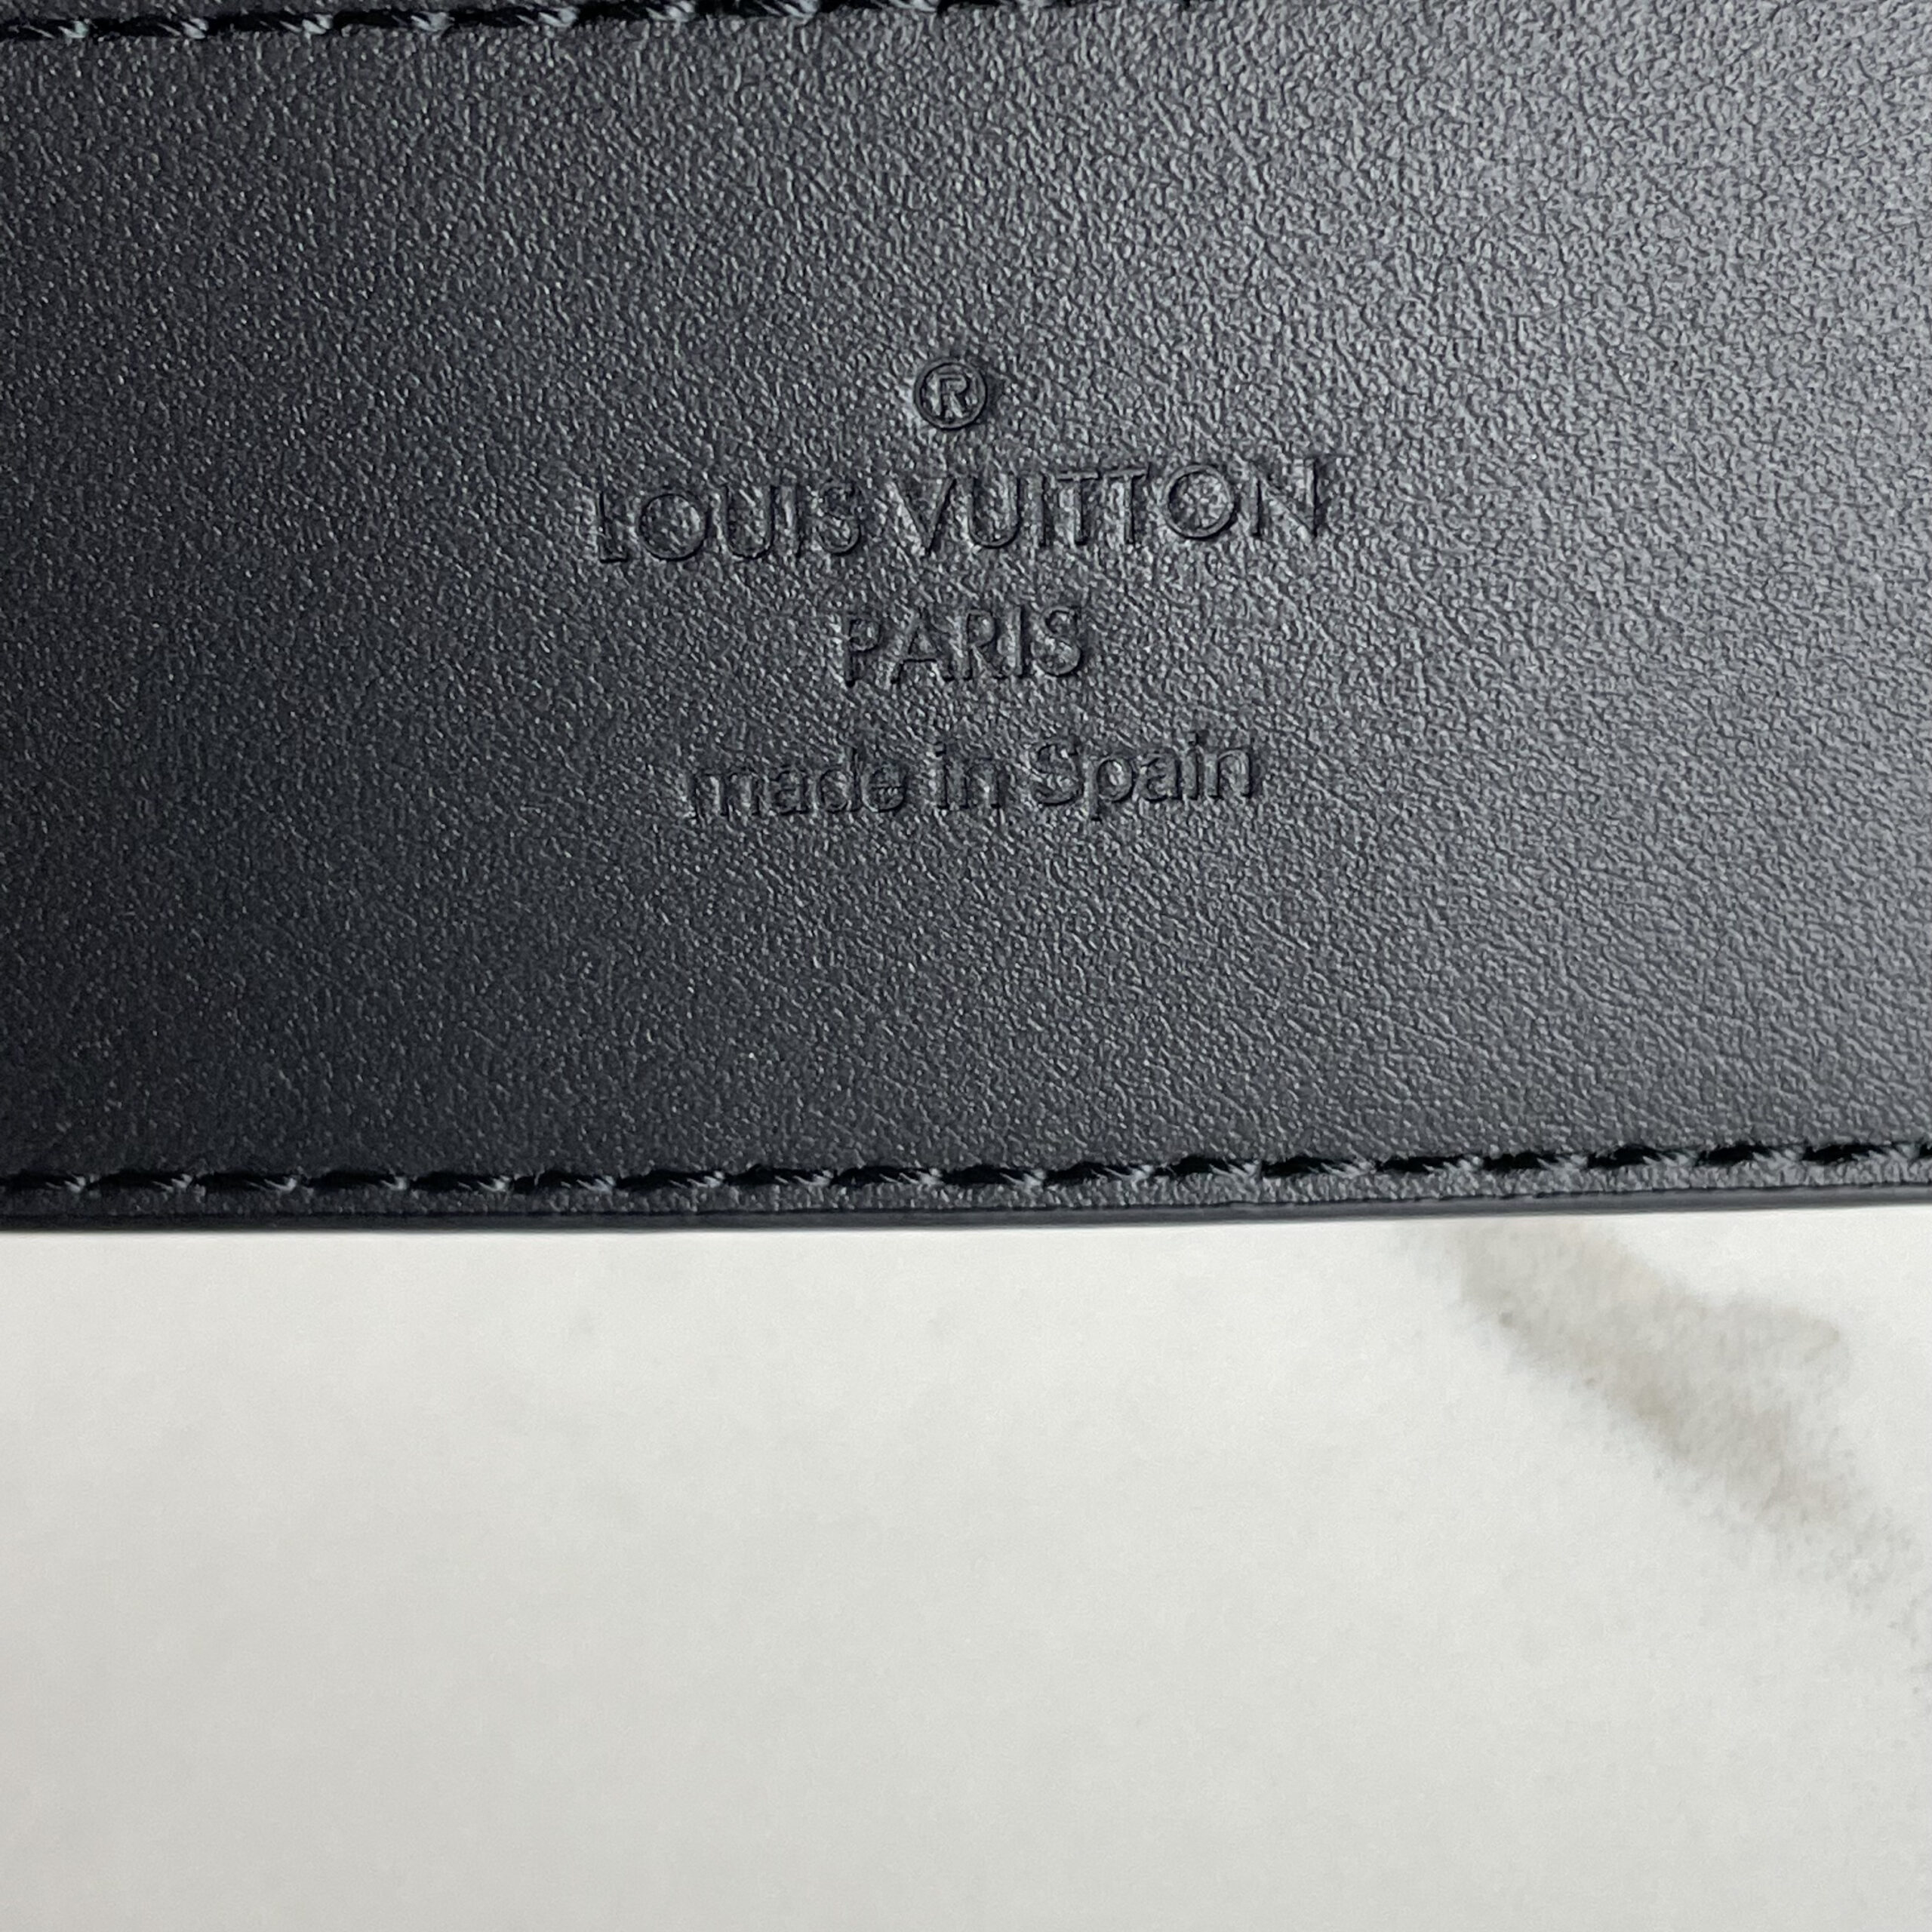 LOUIS VUITTON LV Initials 40 mm Reversible Belt - DYGLOUIS